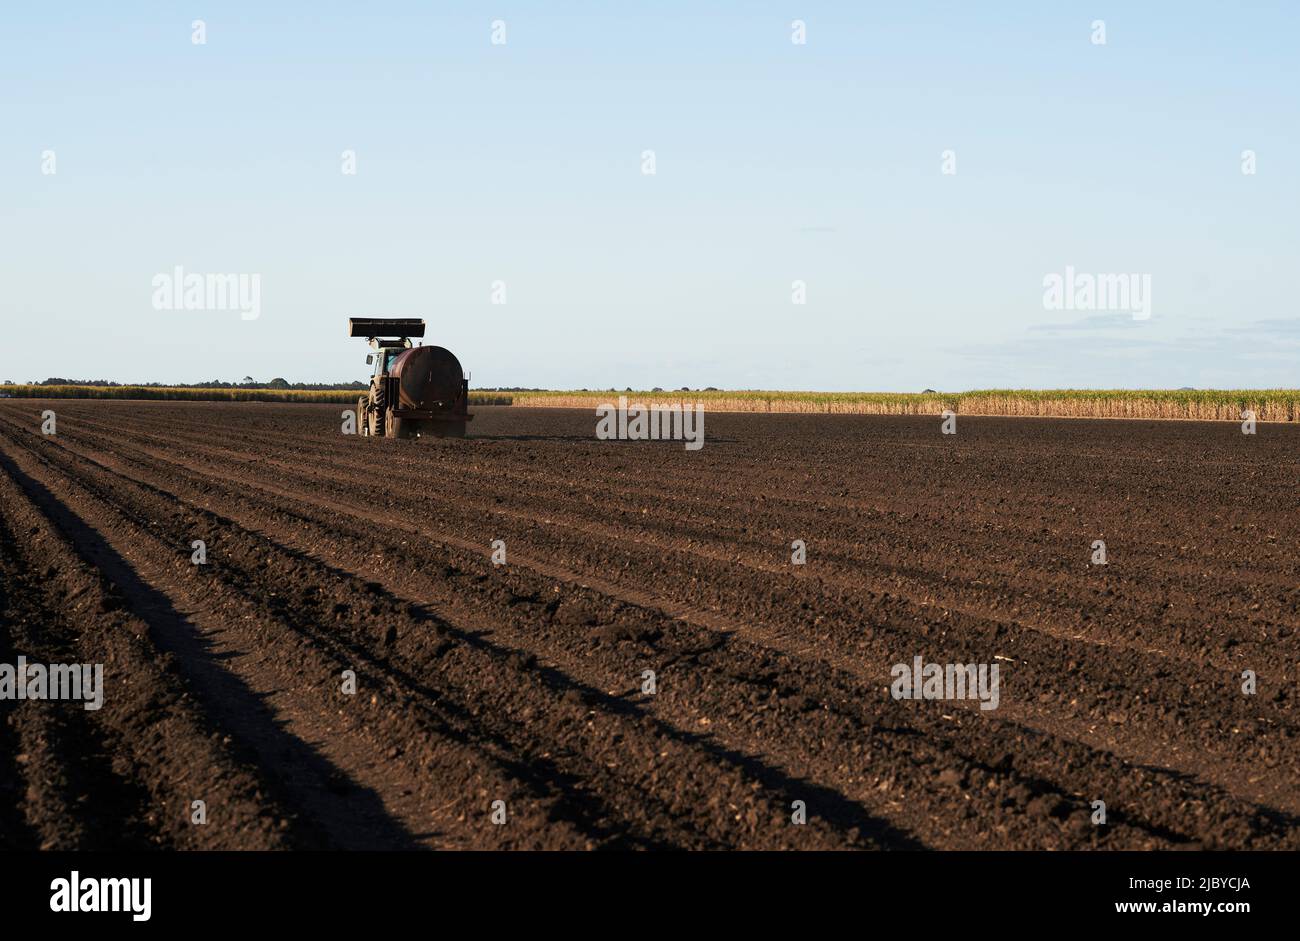 Tracteur préparant des rangées de sol pour la plantation de jeunes plants de canne à sucre Banque D'Images